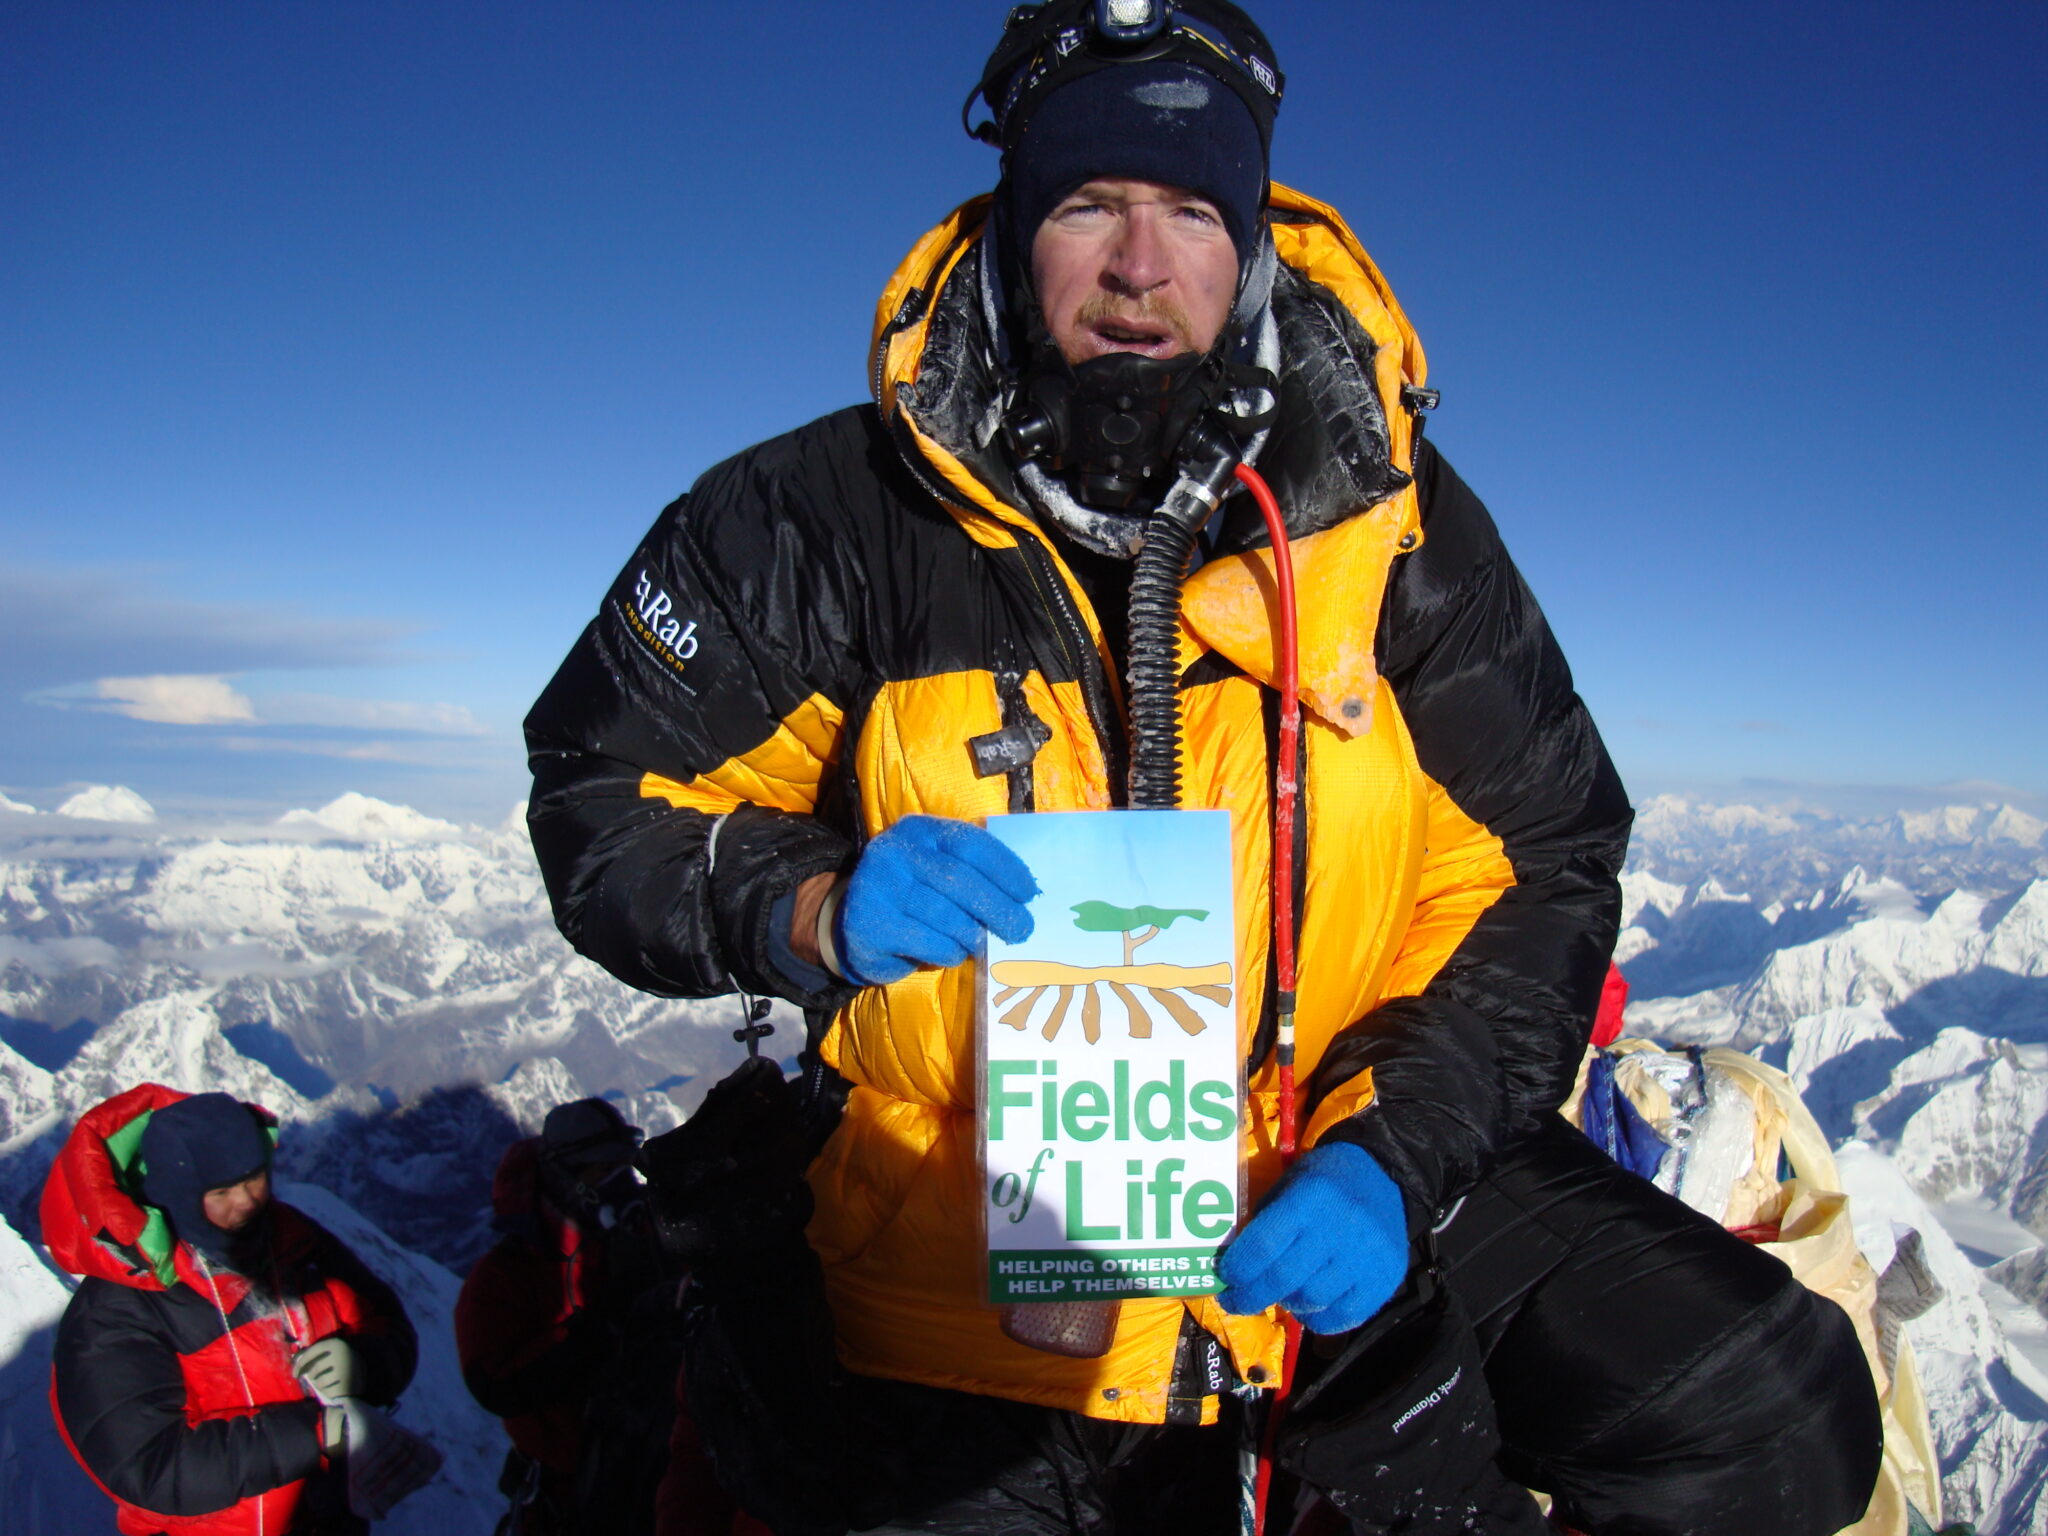 Ian Taylor on the summit of Mount Everest